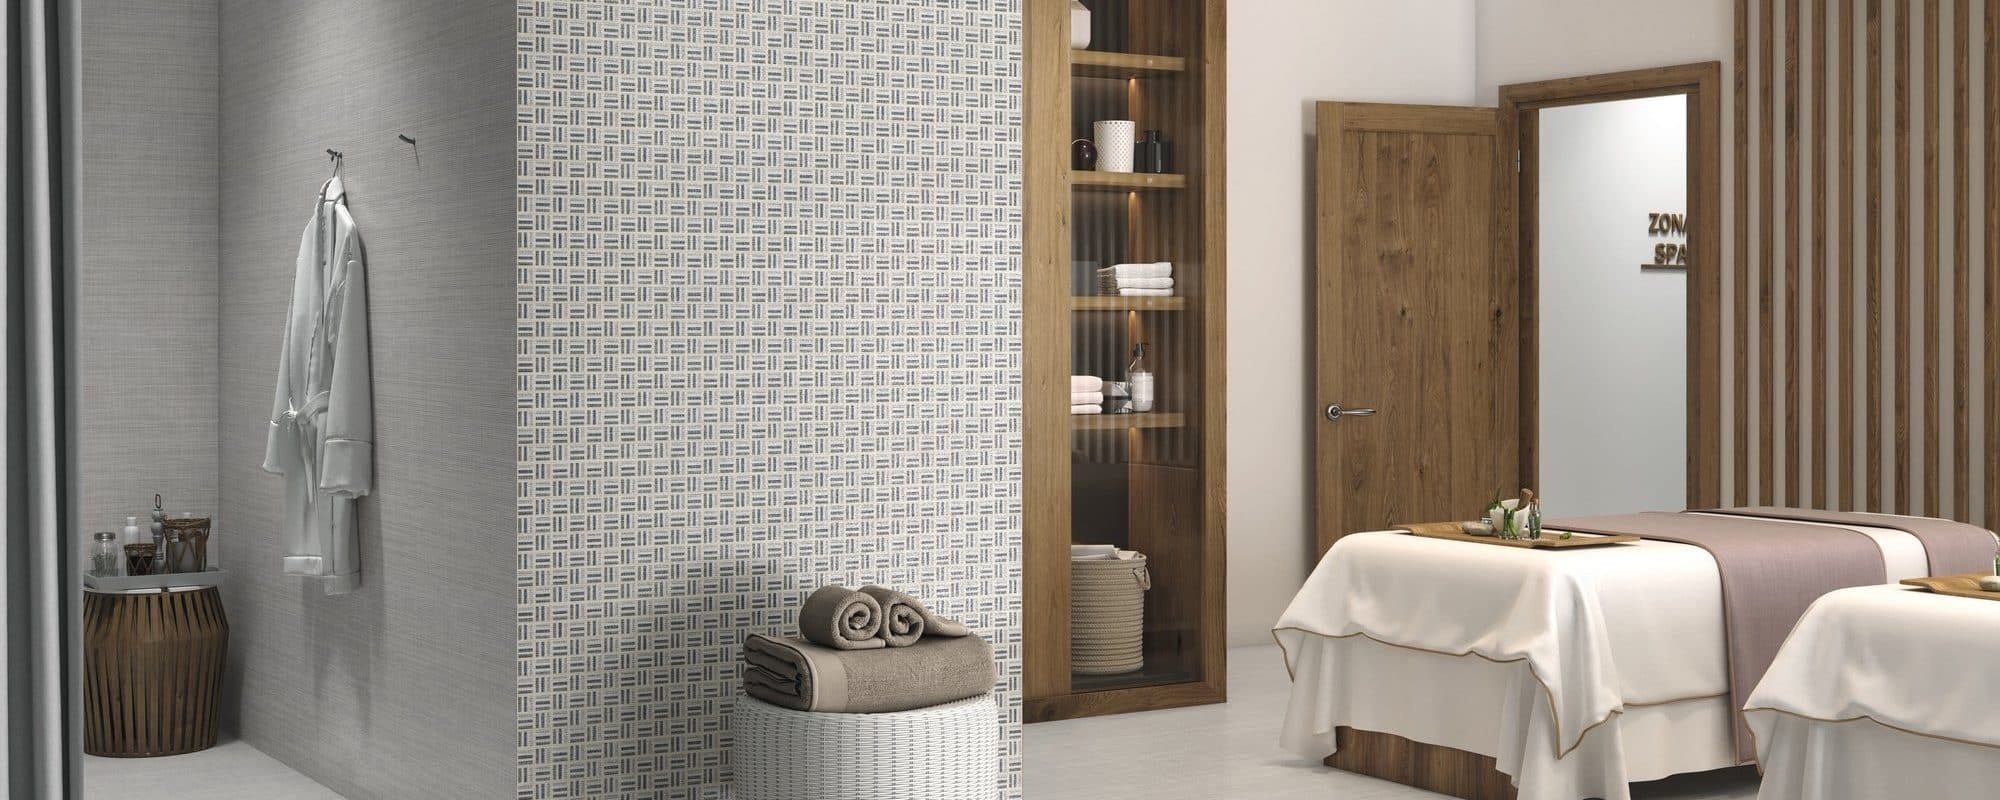 HABITAT Porcelain Wall & Floor Tile uk slider